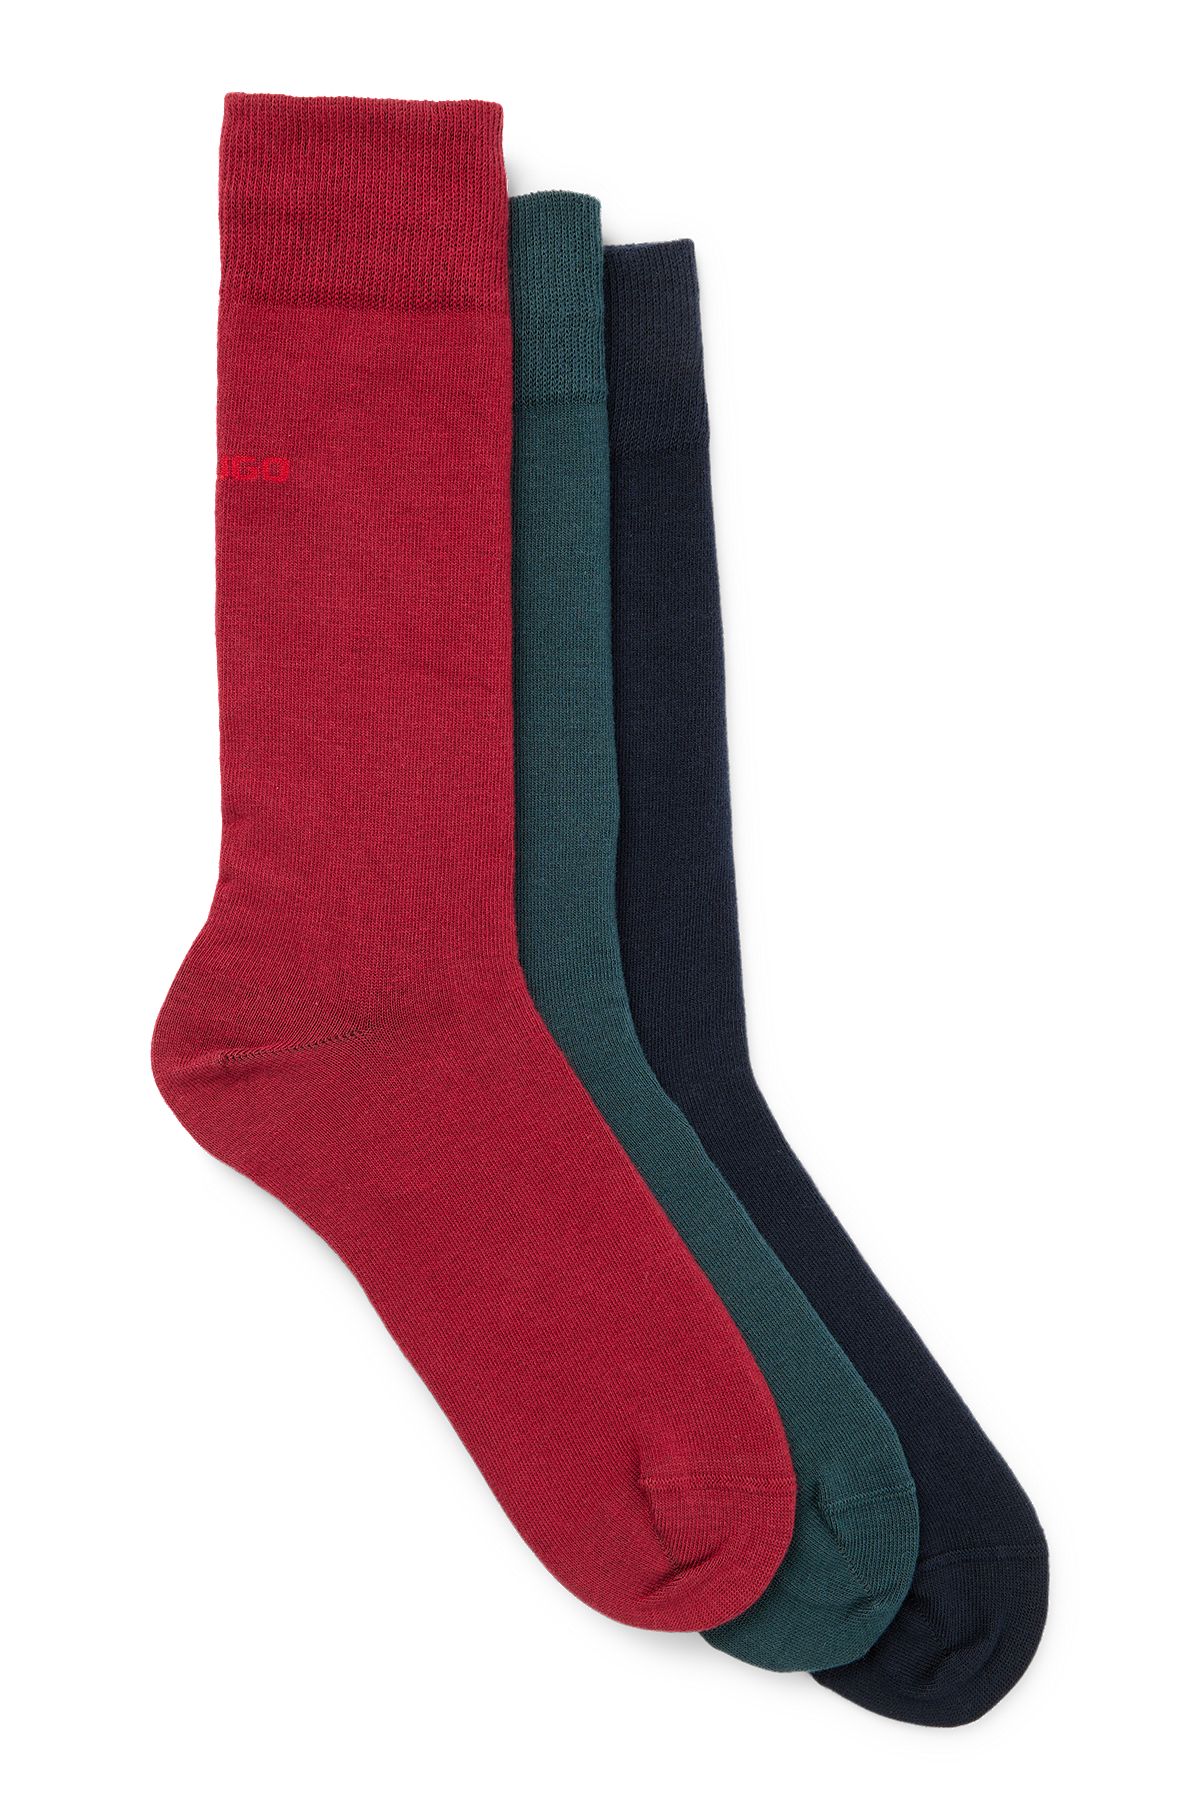 Mittelhohe Socken aus elastischem Baumwoll-Mix im Dreier-Pack, Schwarz / Dunkelgrün / Rot